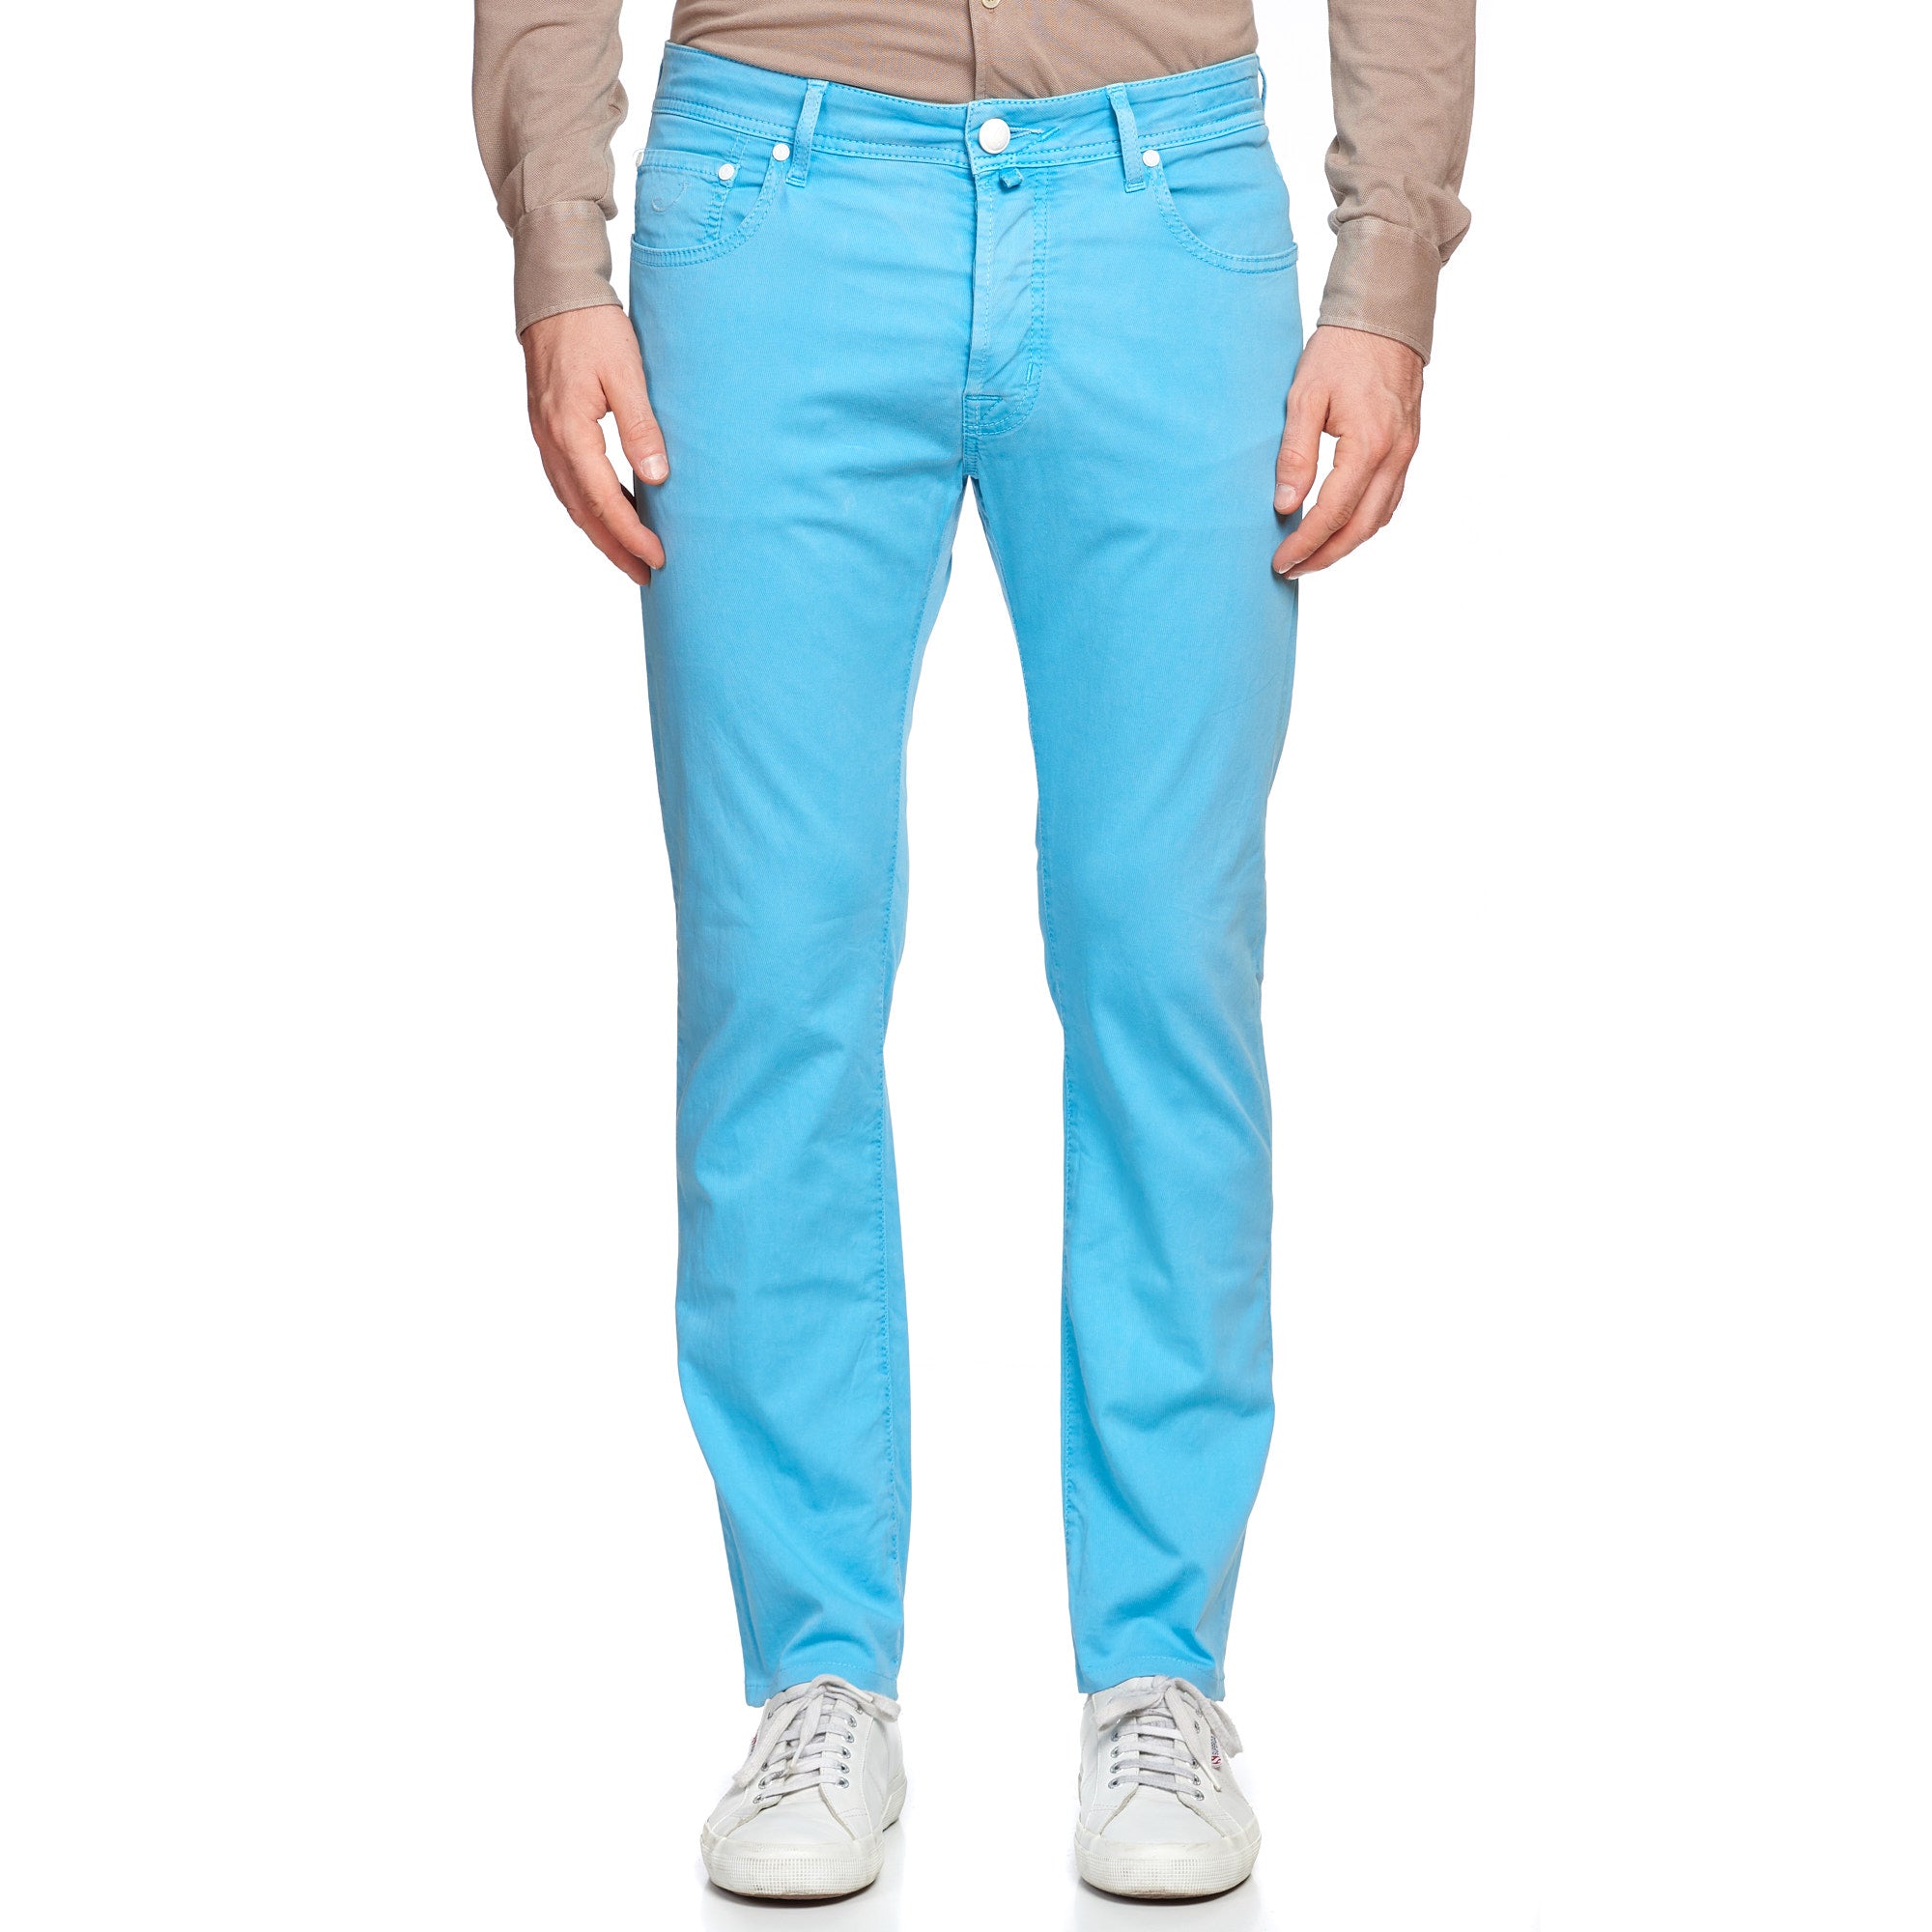 JACOB COHEN J688 Comfort Vintage Light Blue Cotton Stretch Slim Fit Jeans Pants US 33